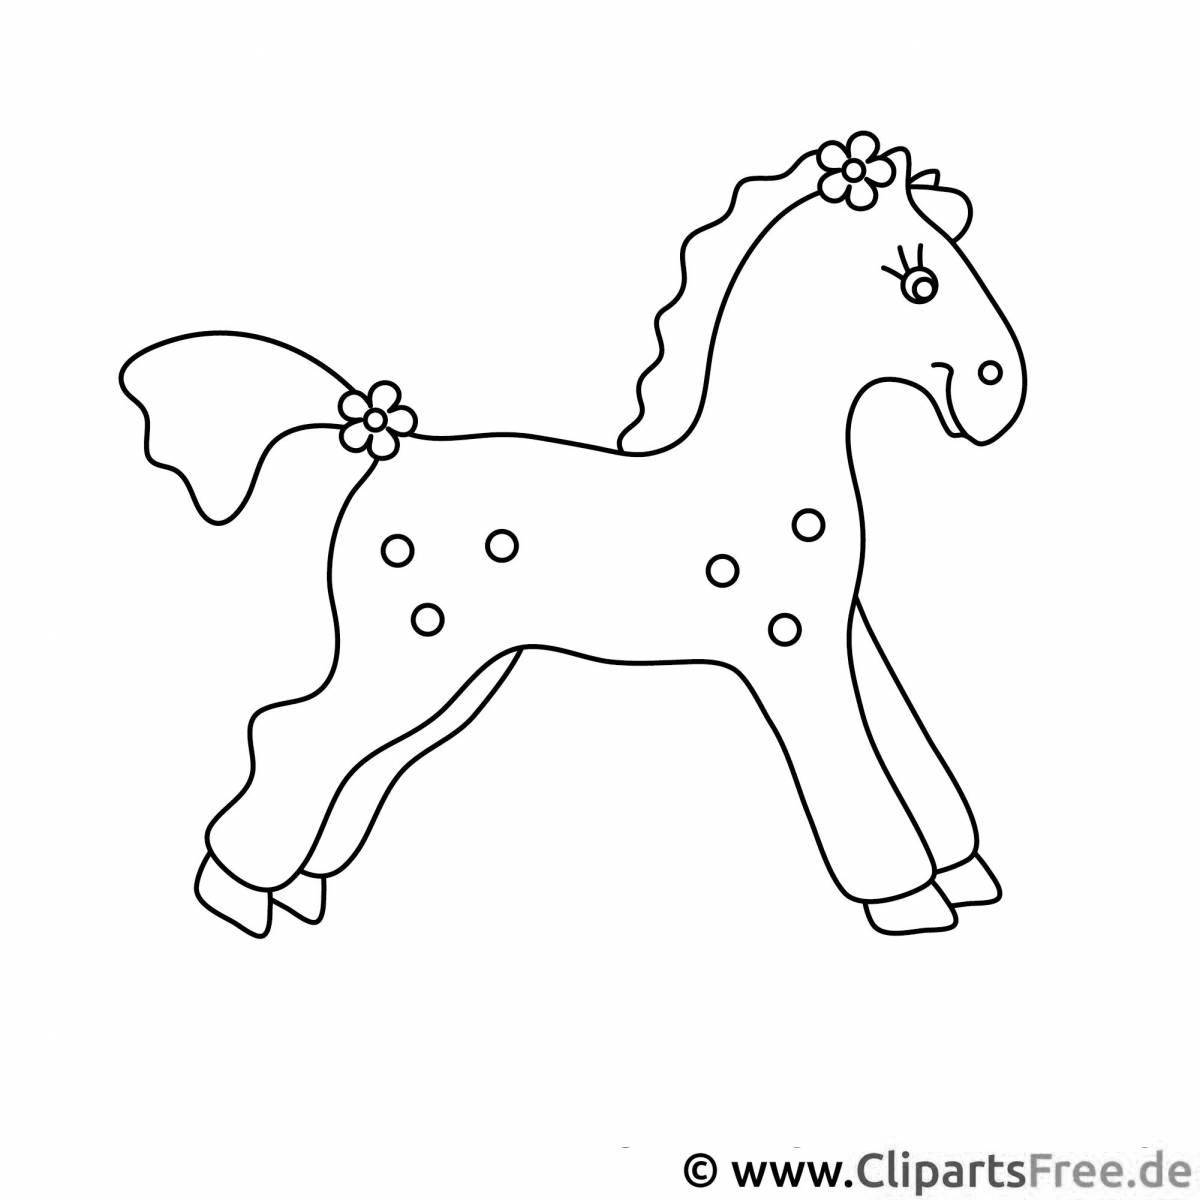 Раскраска сказочная игрушка-лошадка